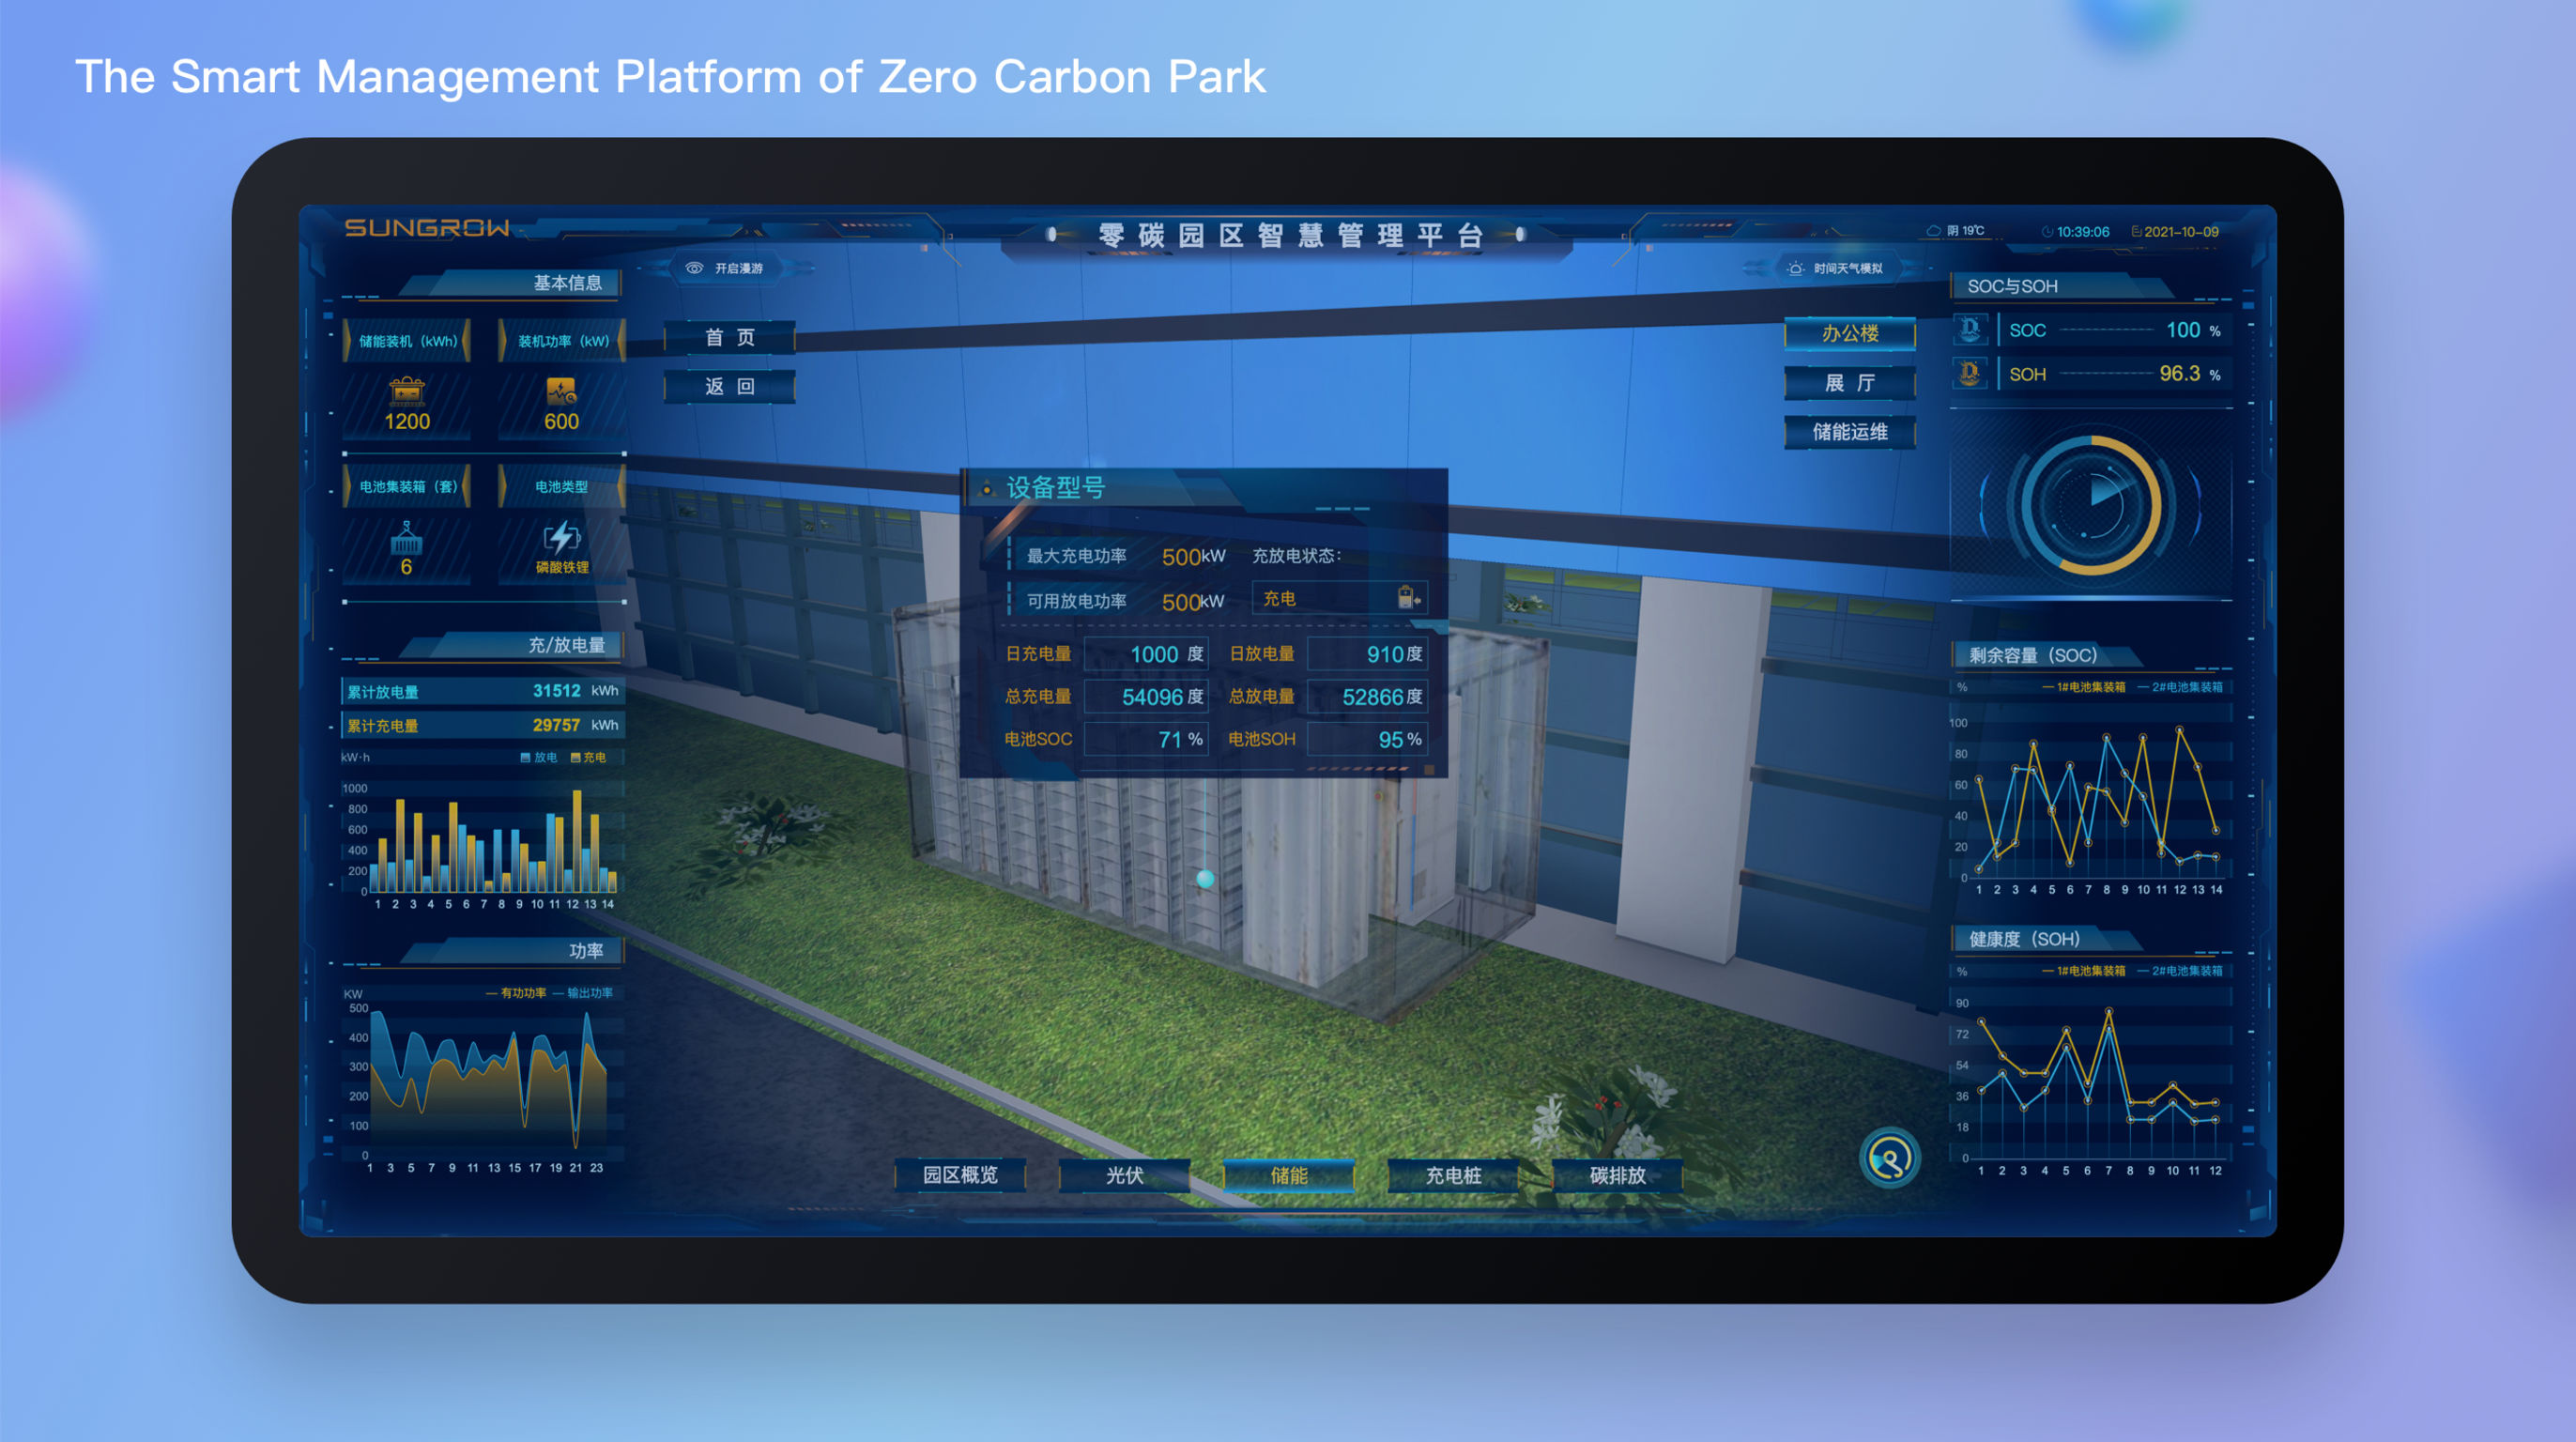 The Smart Management Platform of Zero Carbon Park